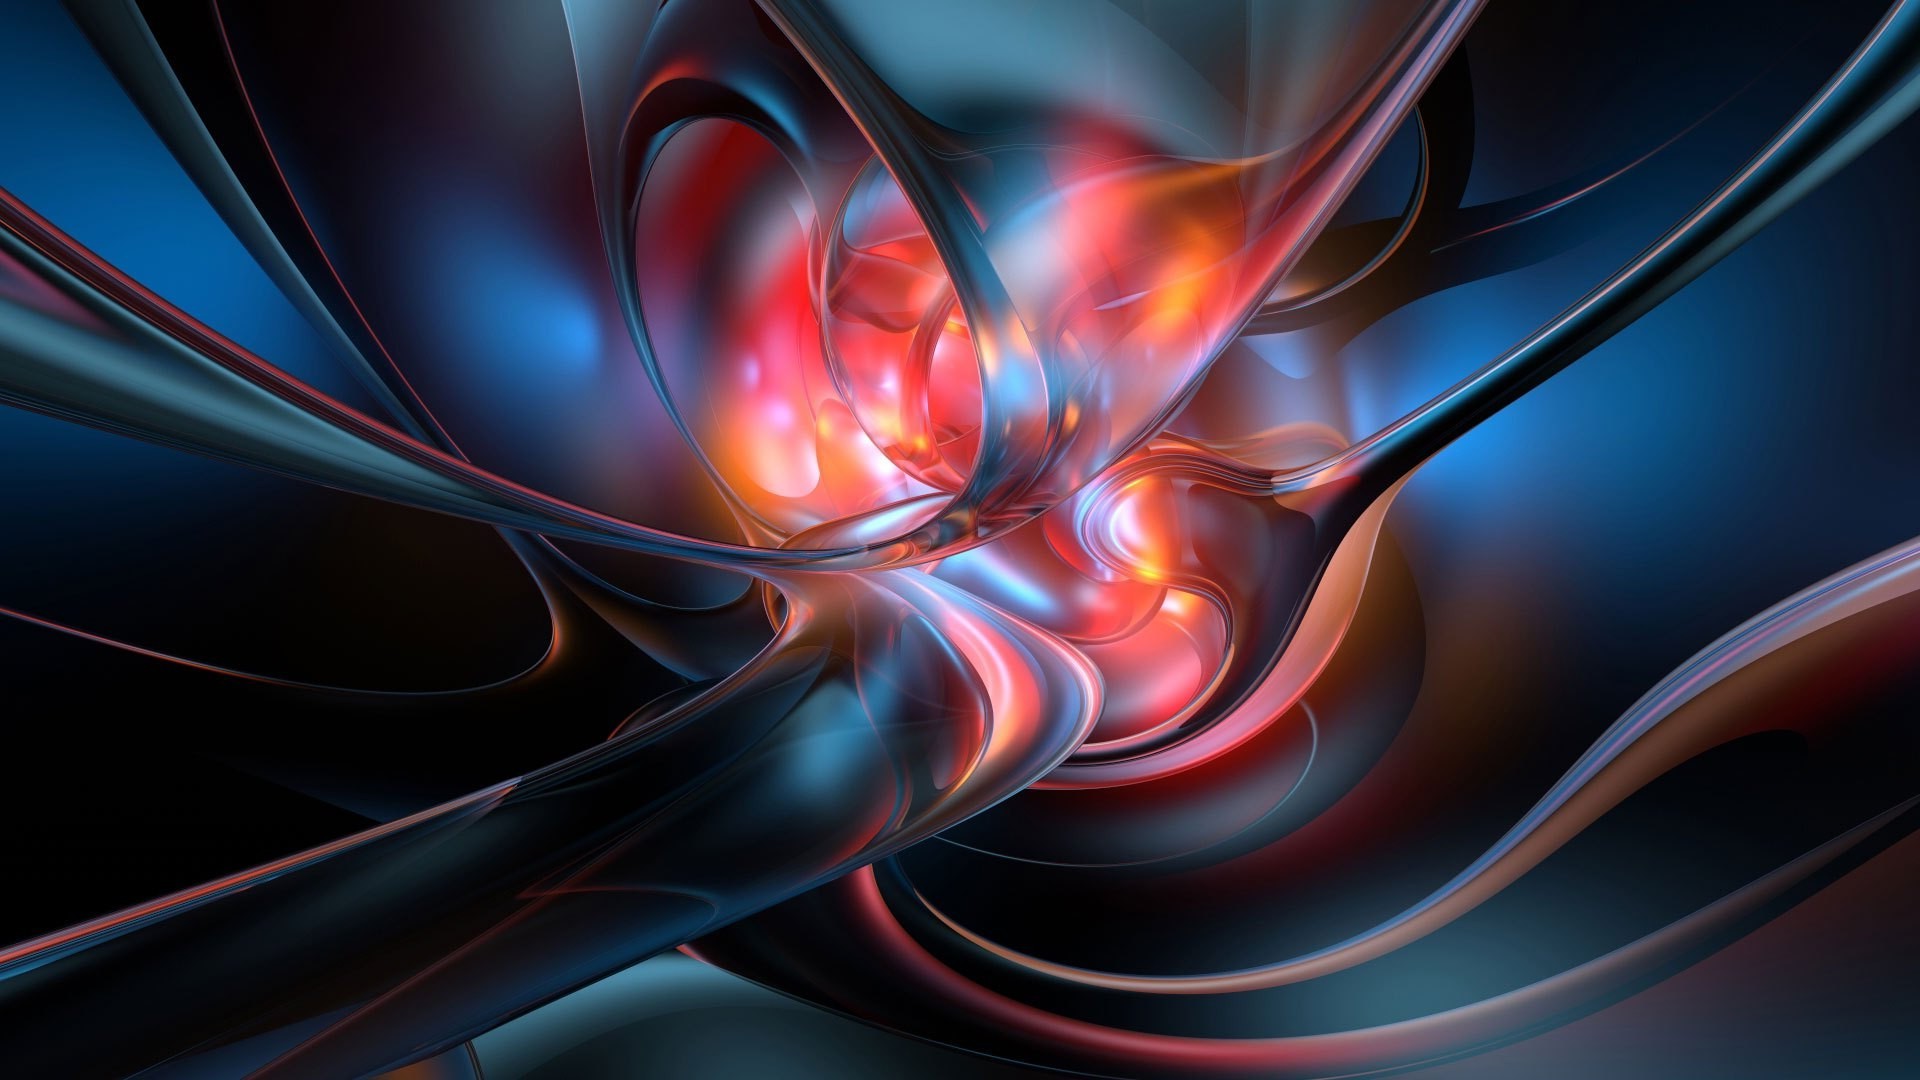 абстракция фрактал пламя динамические кривая фантастический дизайн график фантазия волна движения линия обои сюрреалистично энергии иллюстрация градиент геометрия дым искусство